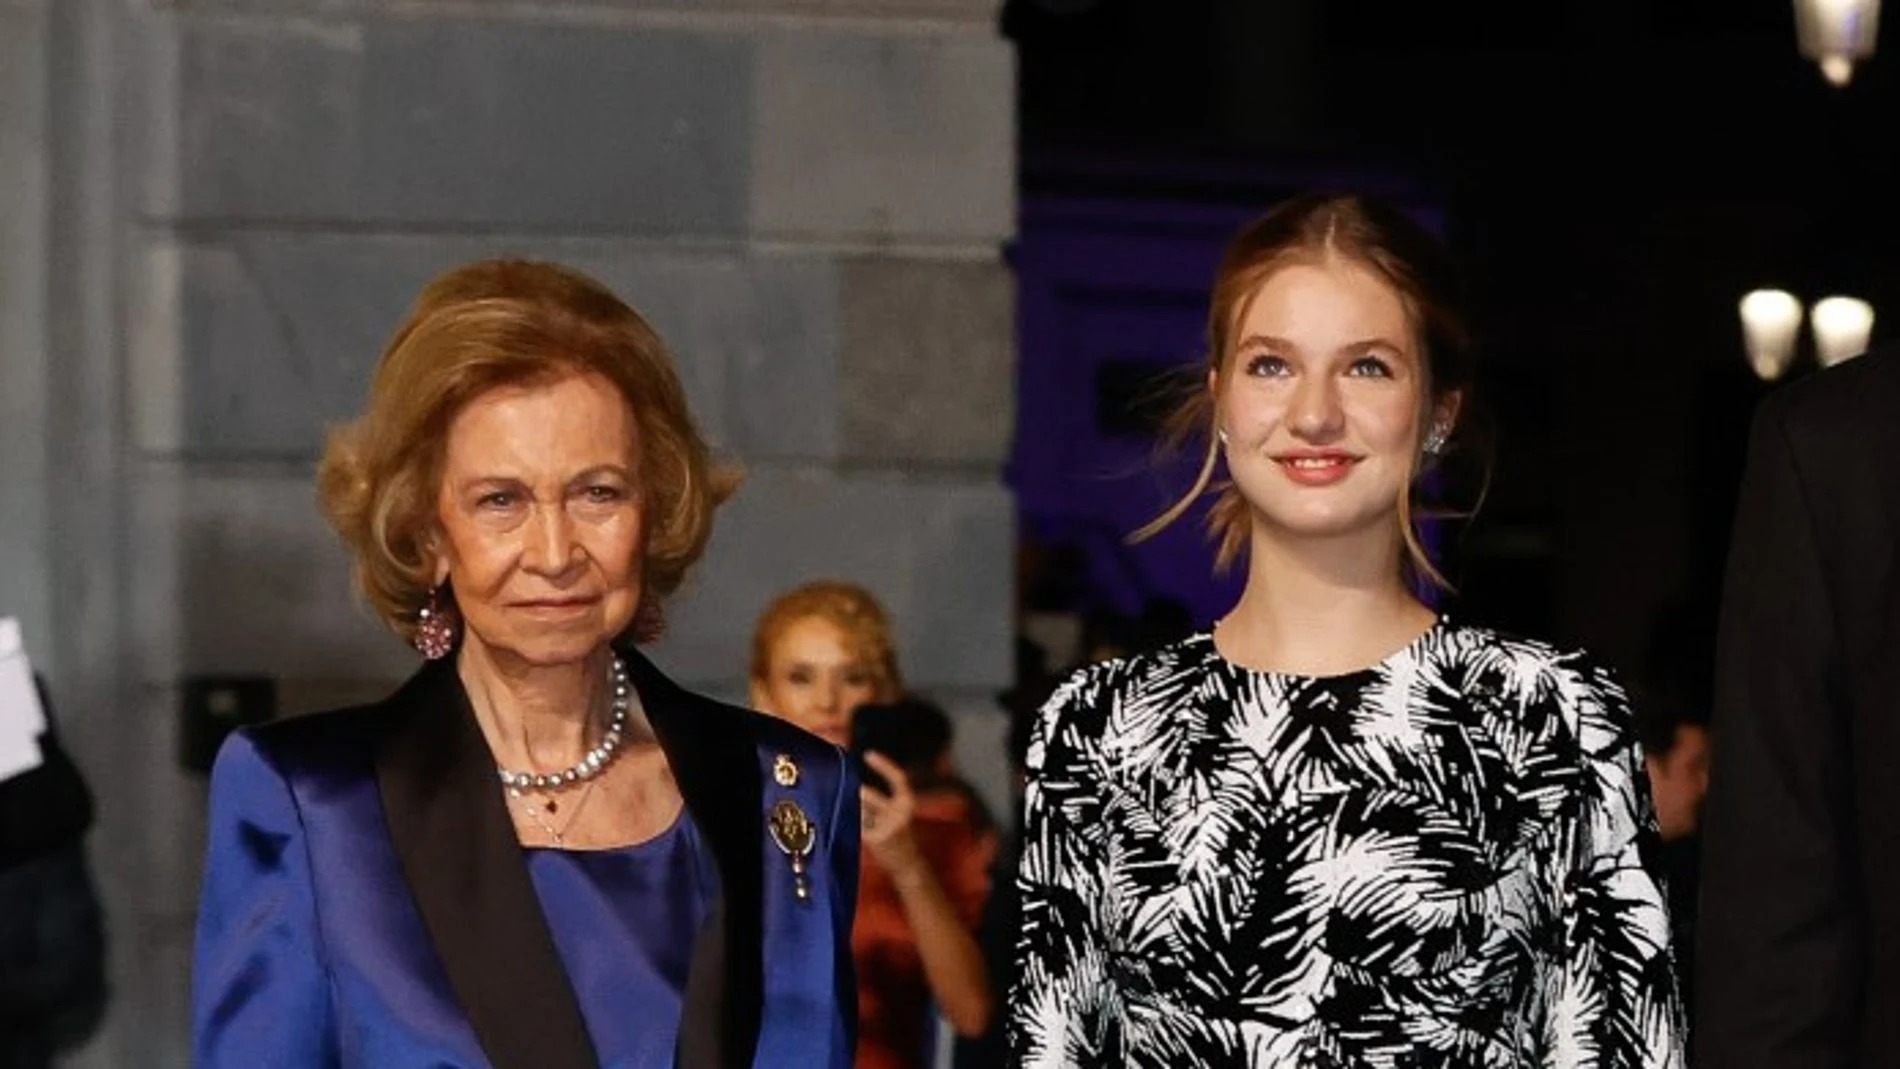 La reina Sofia posa data de caducitat a Letizia a la corona